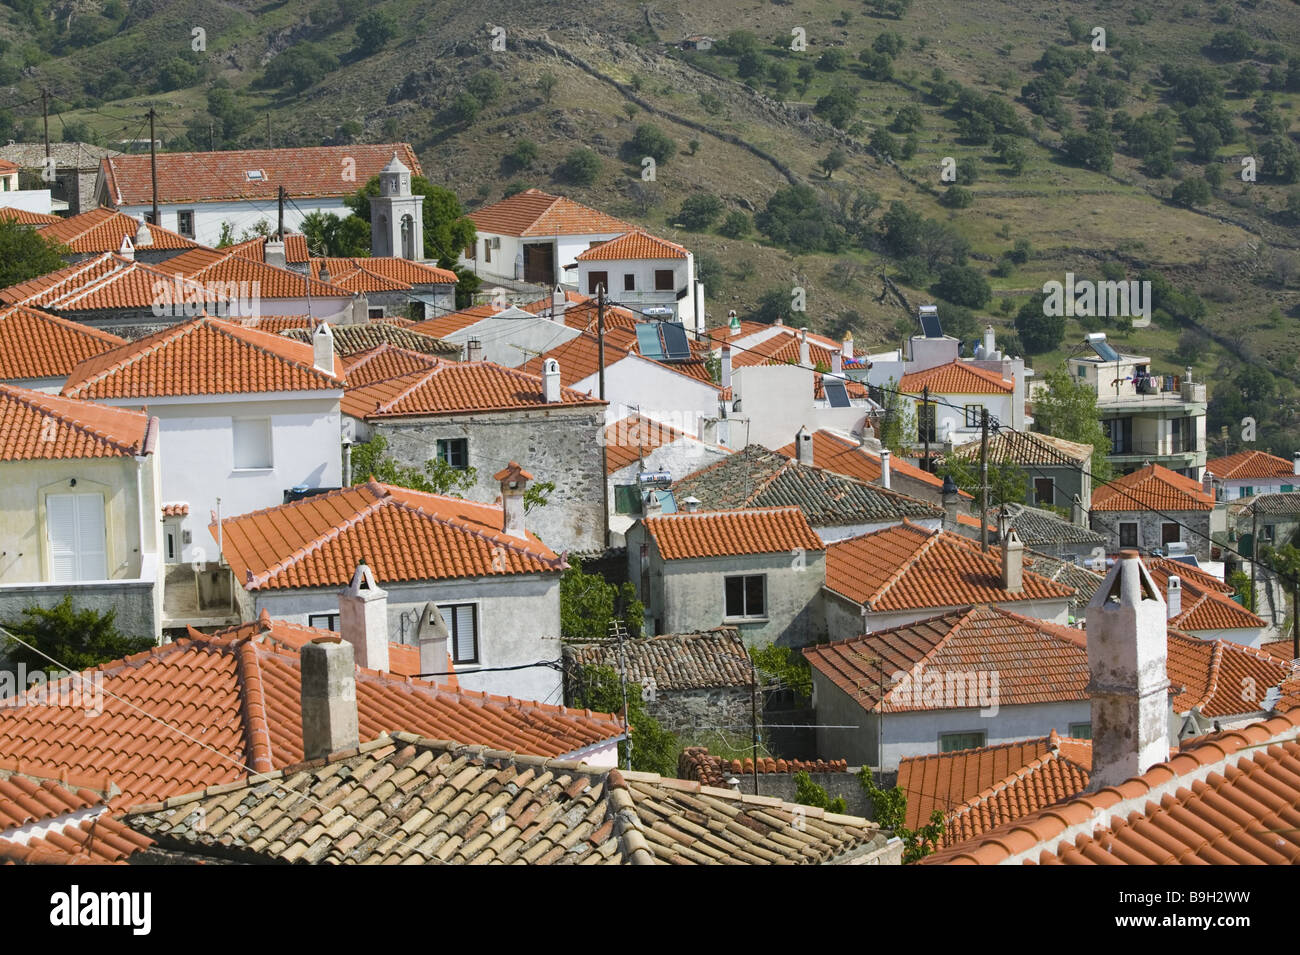 Grecia isola di Lesbo Agra City View Europa Mediterraneo-isola città case residences architettura tetti in mattoni di tetti Foto Stock